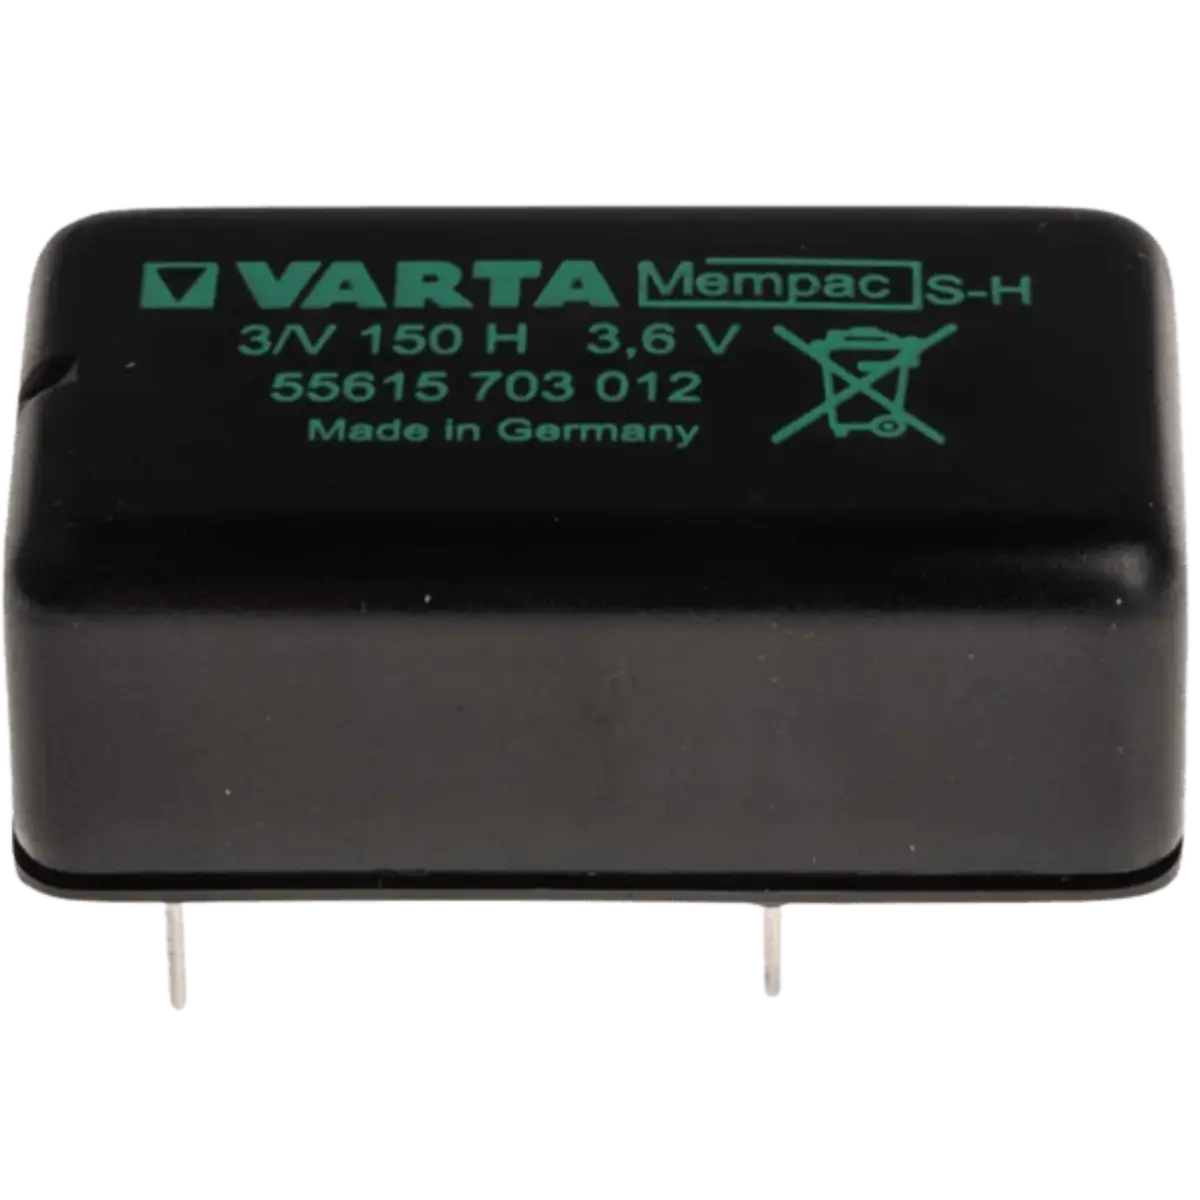 Batterie rechargeables Varta 3.6V 150mAh NiMH V150H